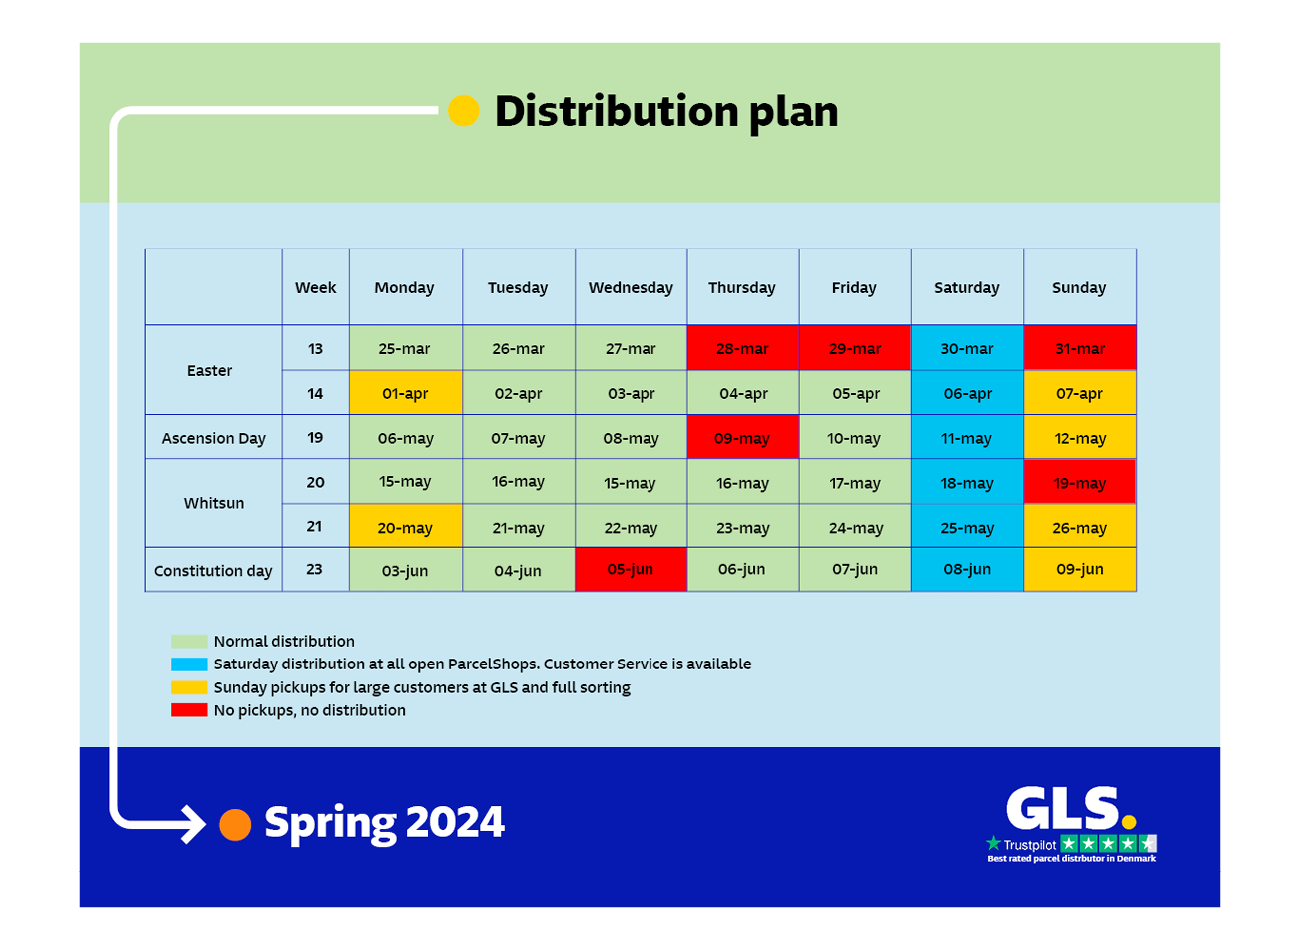 Spring distribution at GLS